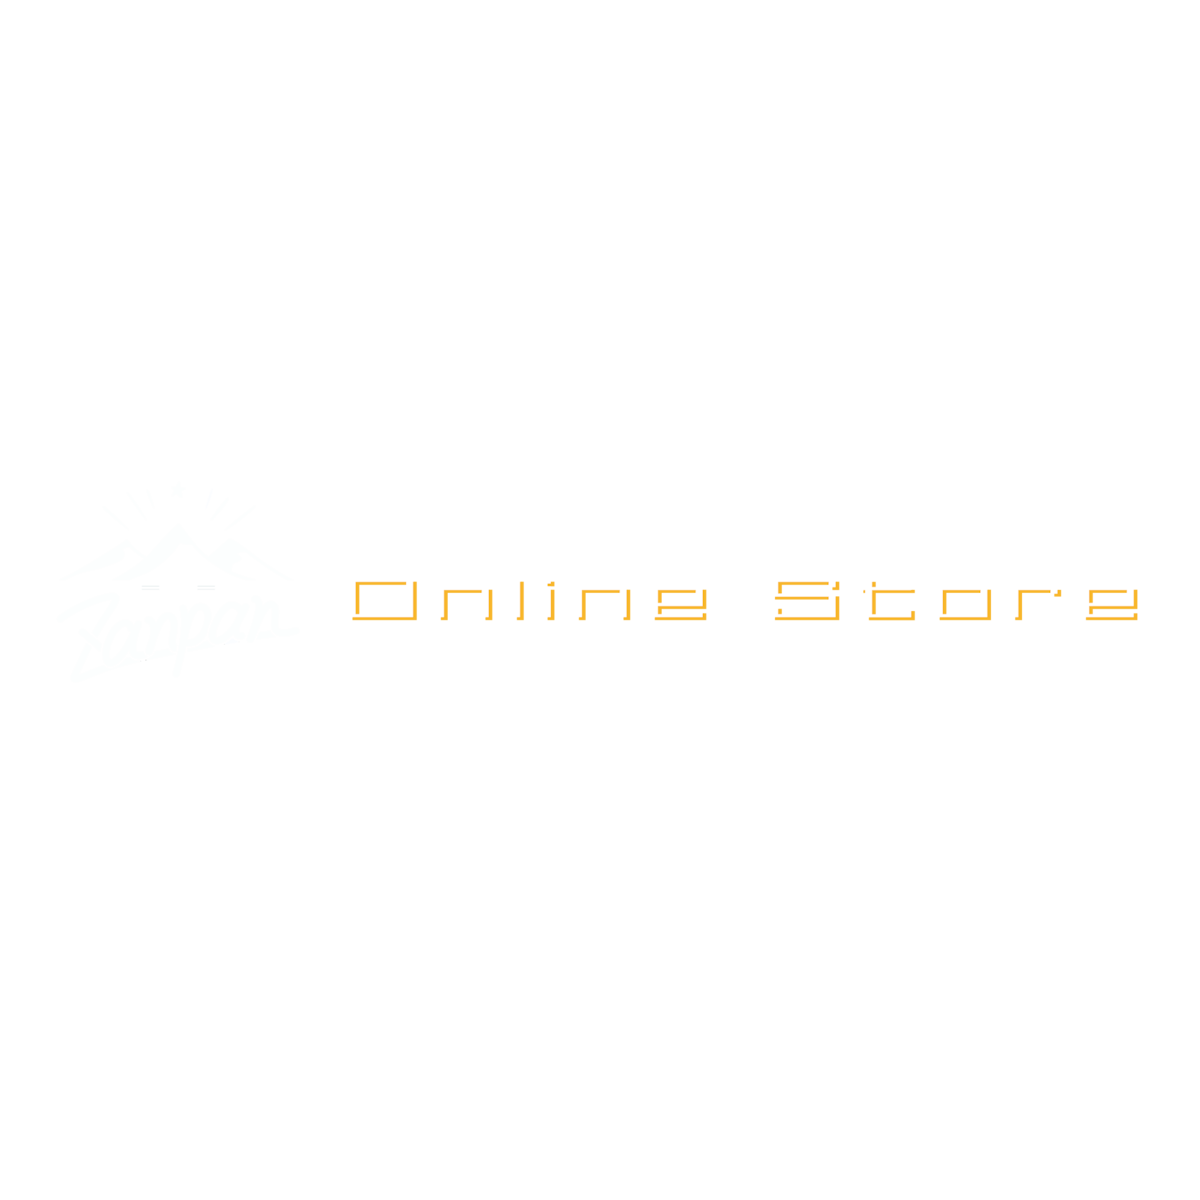 zanpan Online Store